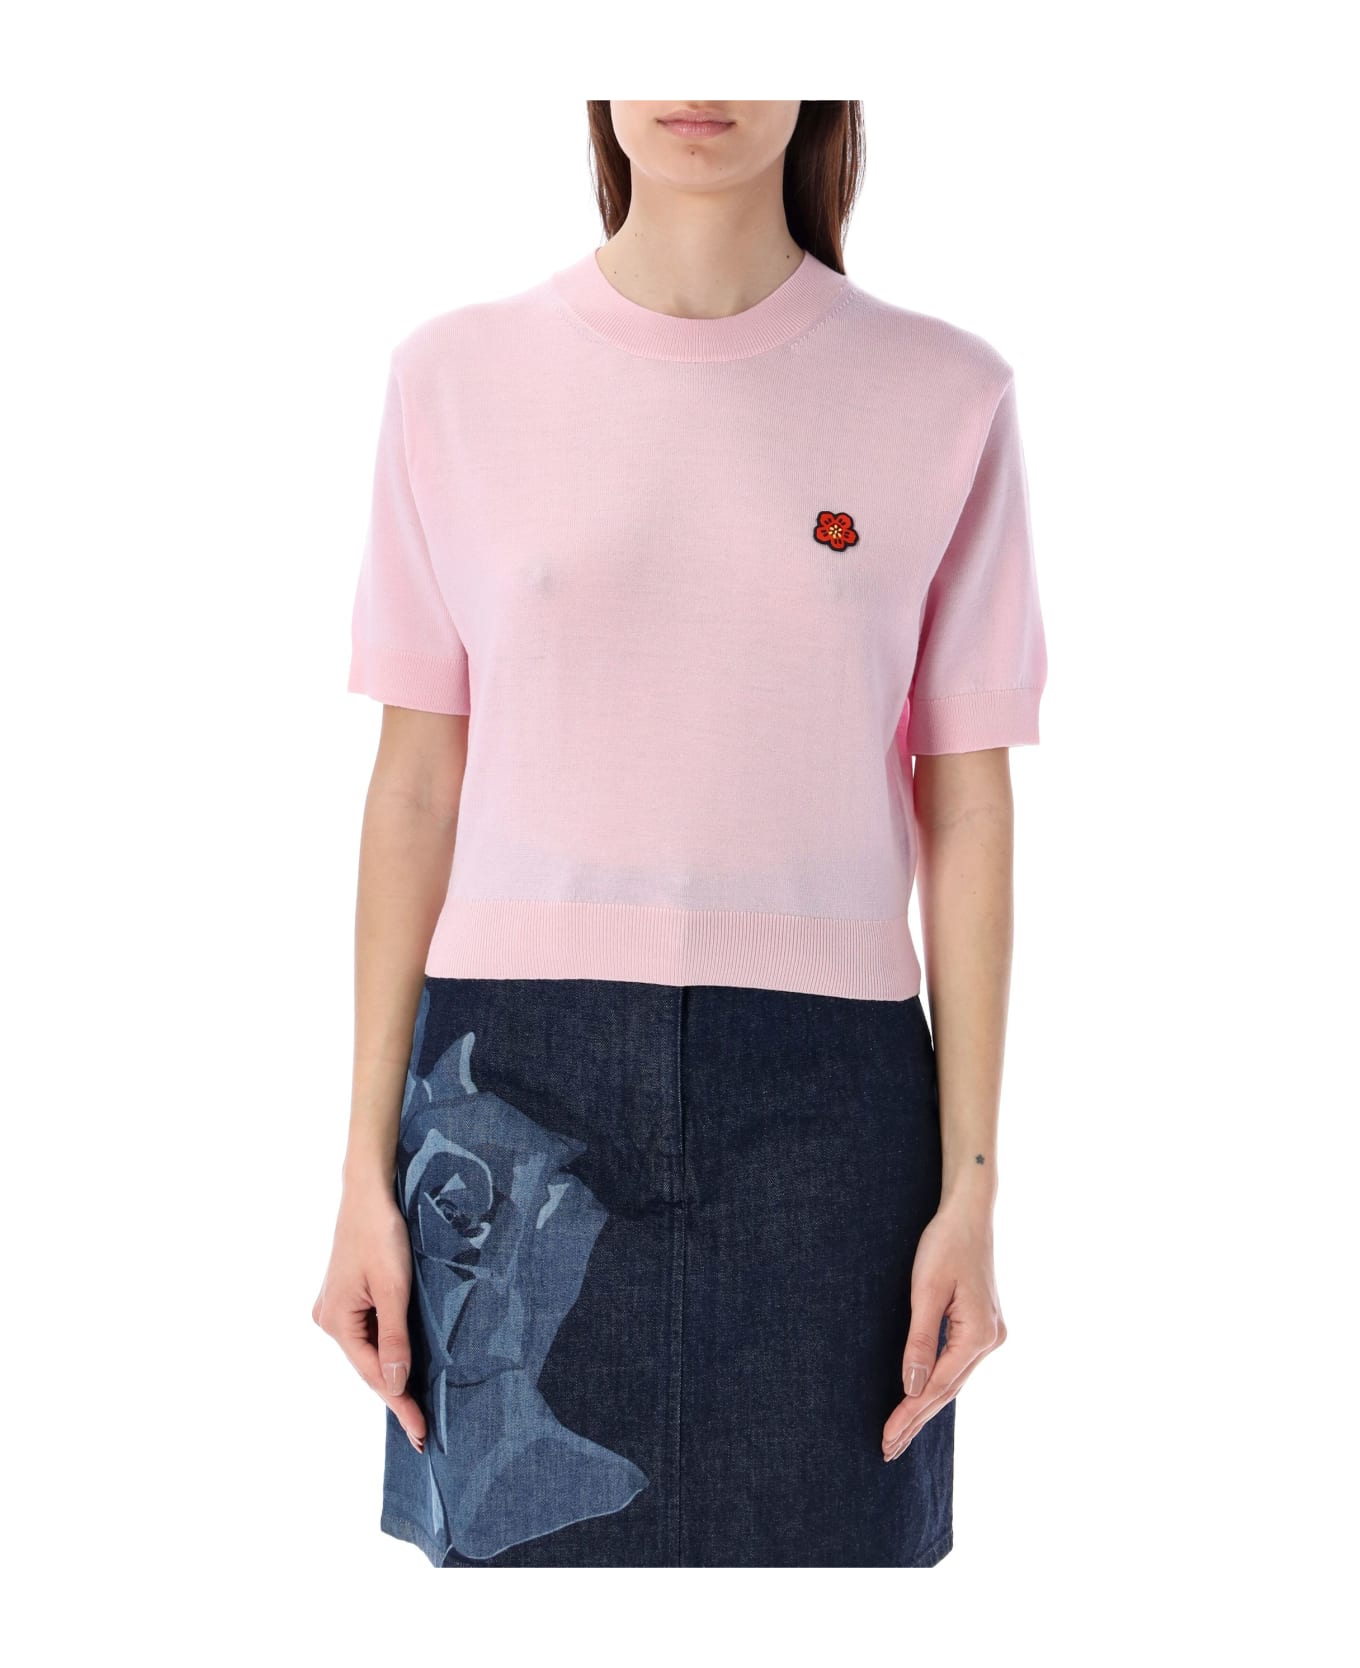 Kenzo Boke Crest Short Sleeve Jumper - FADED PINK Tシャツ